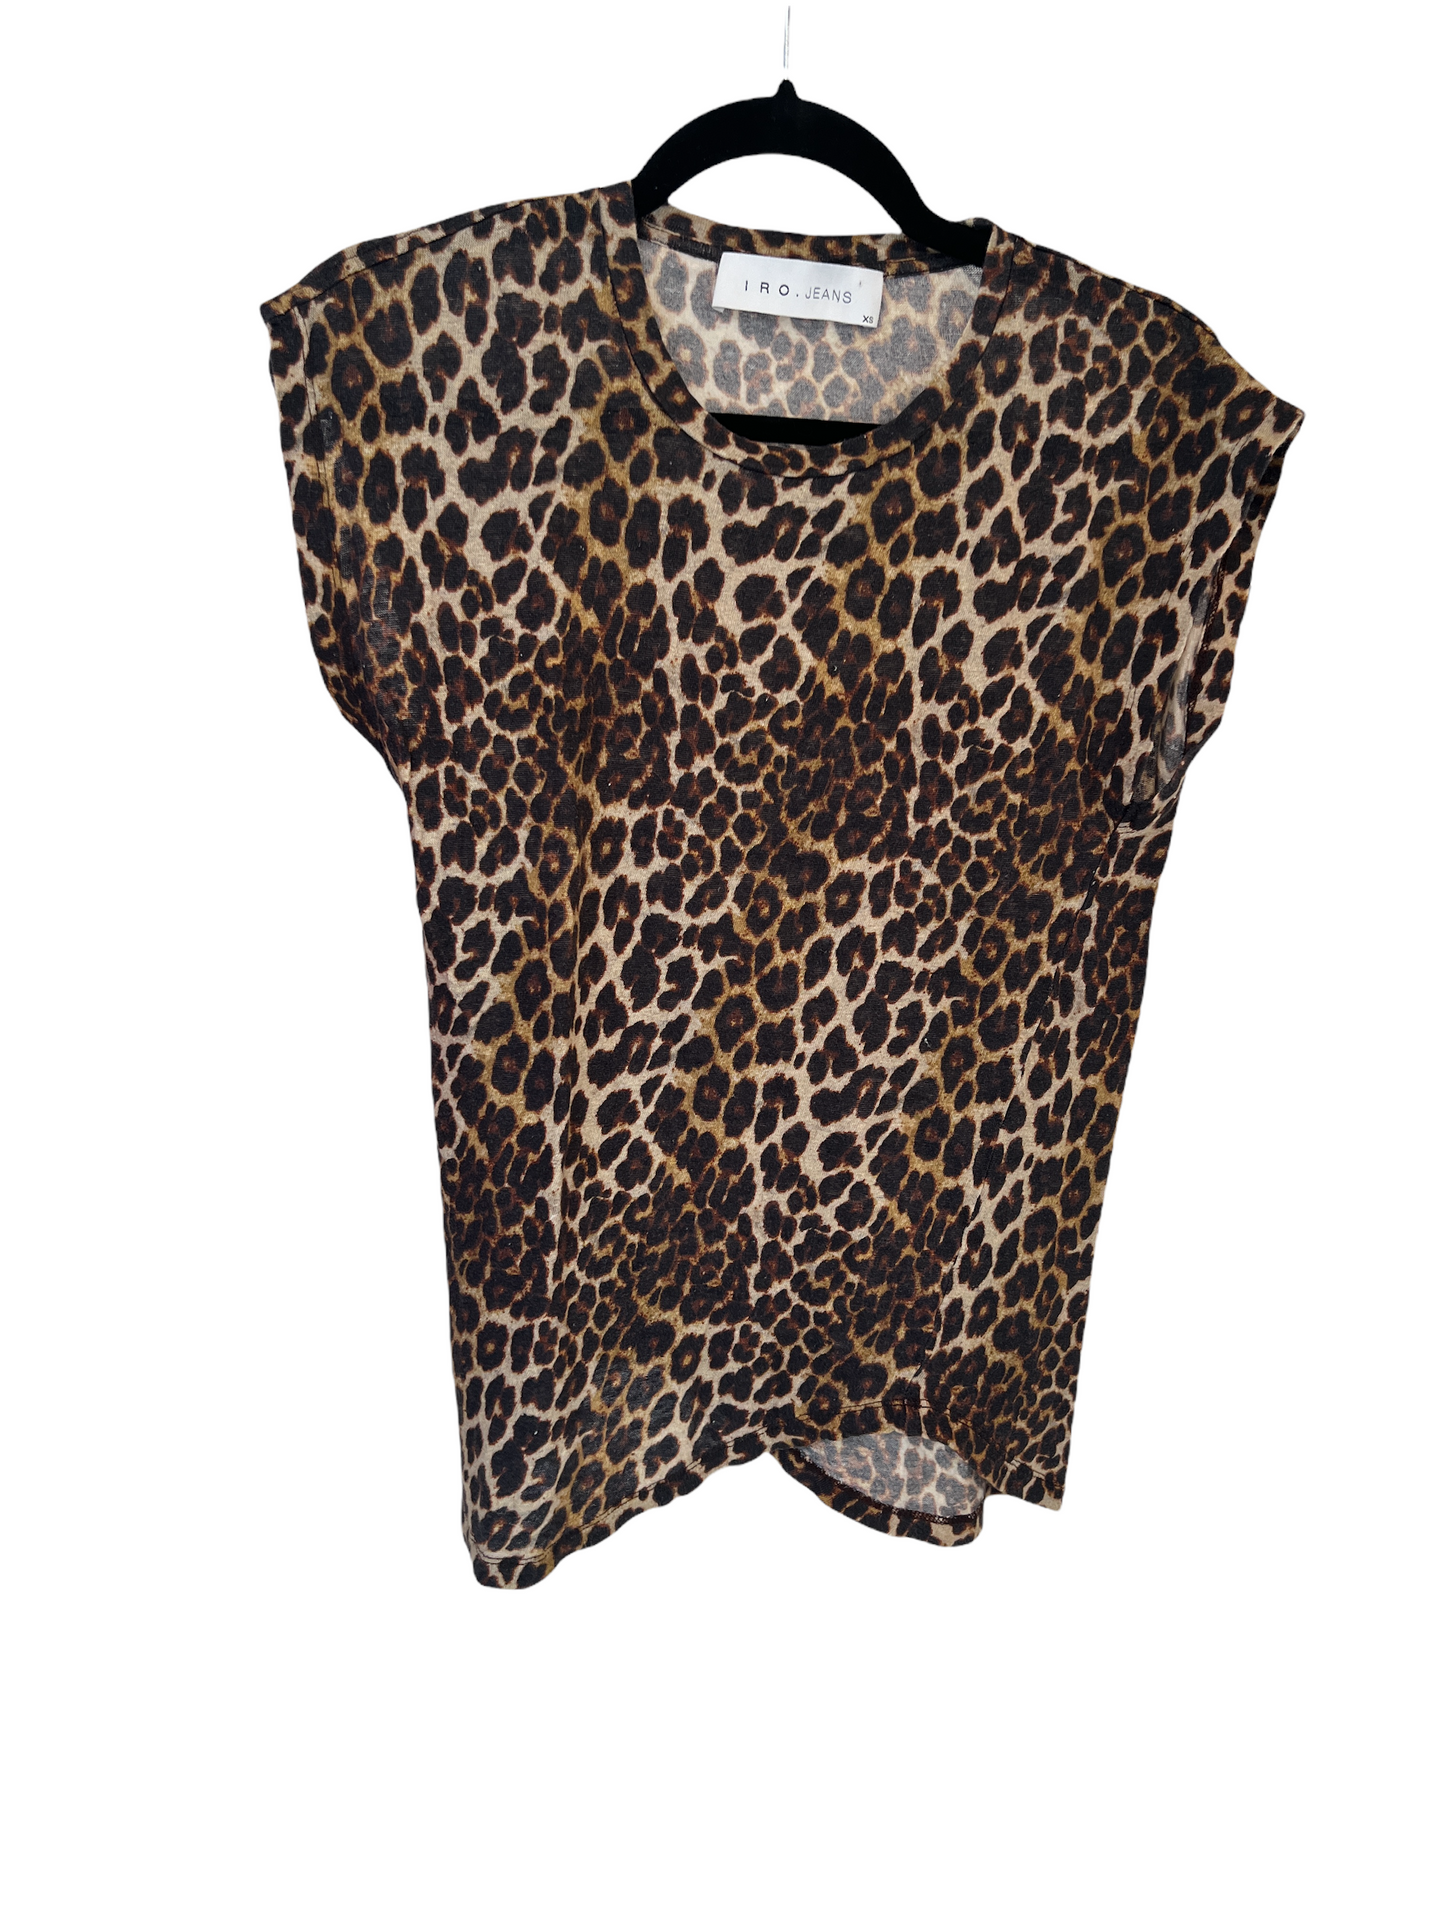 Leopard Print T-shirt - XS